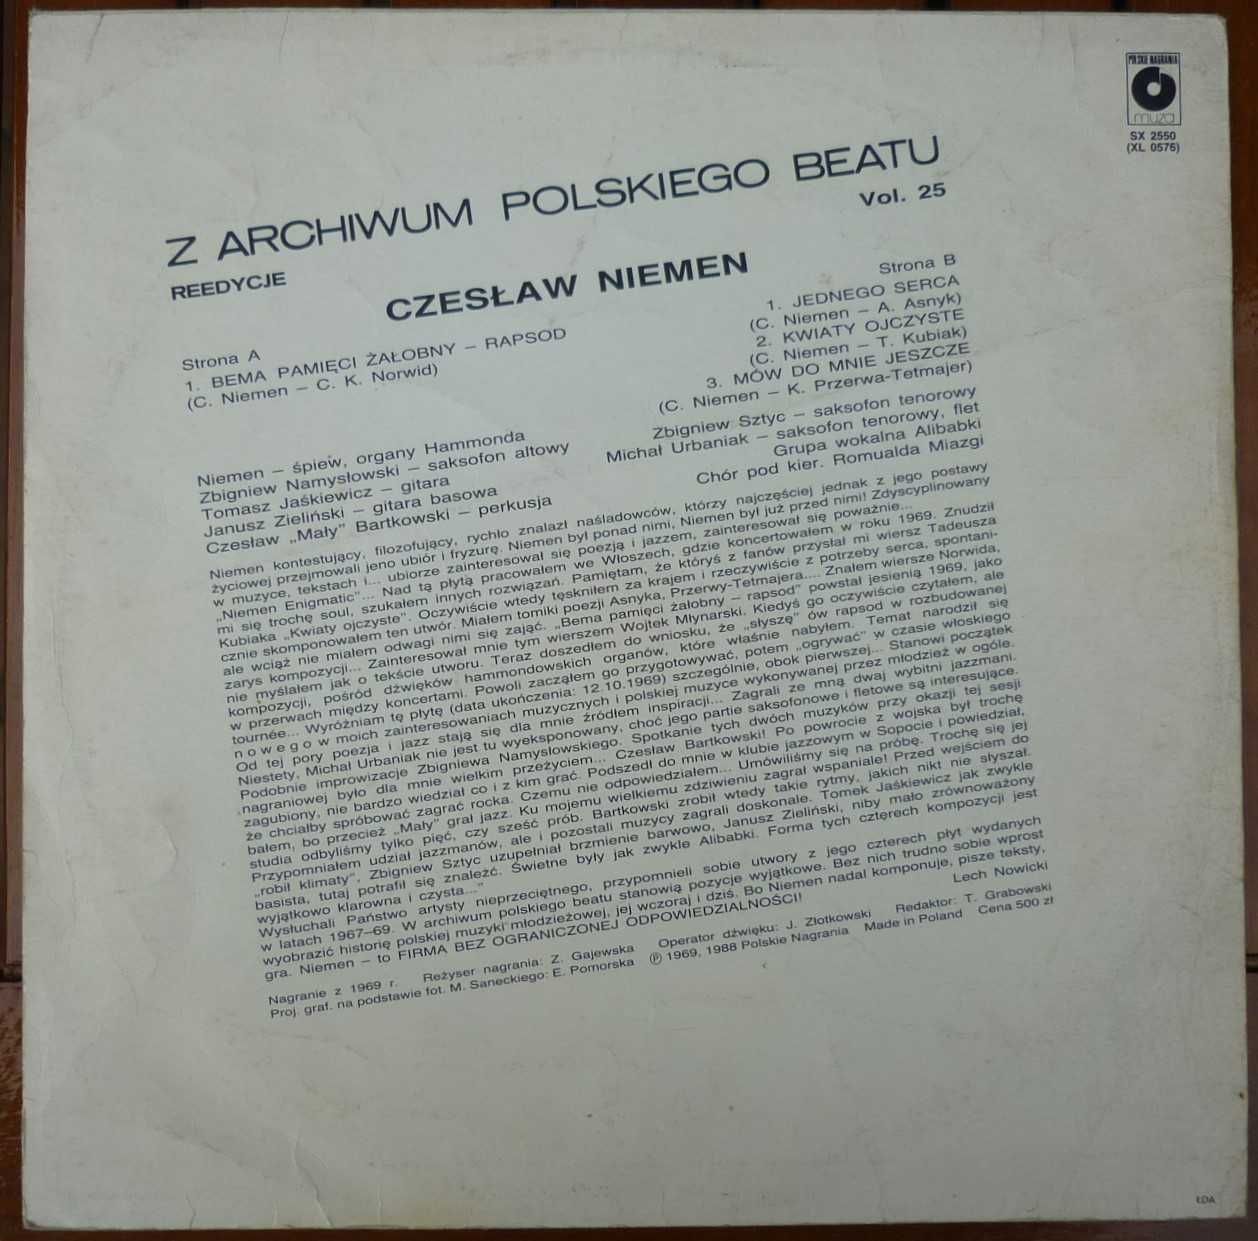 winyl Czesław Niemen - Enigmatic - z archiwum polskiego beatu